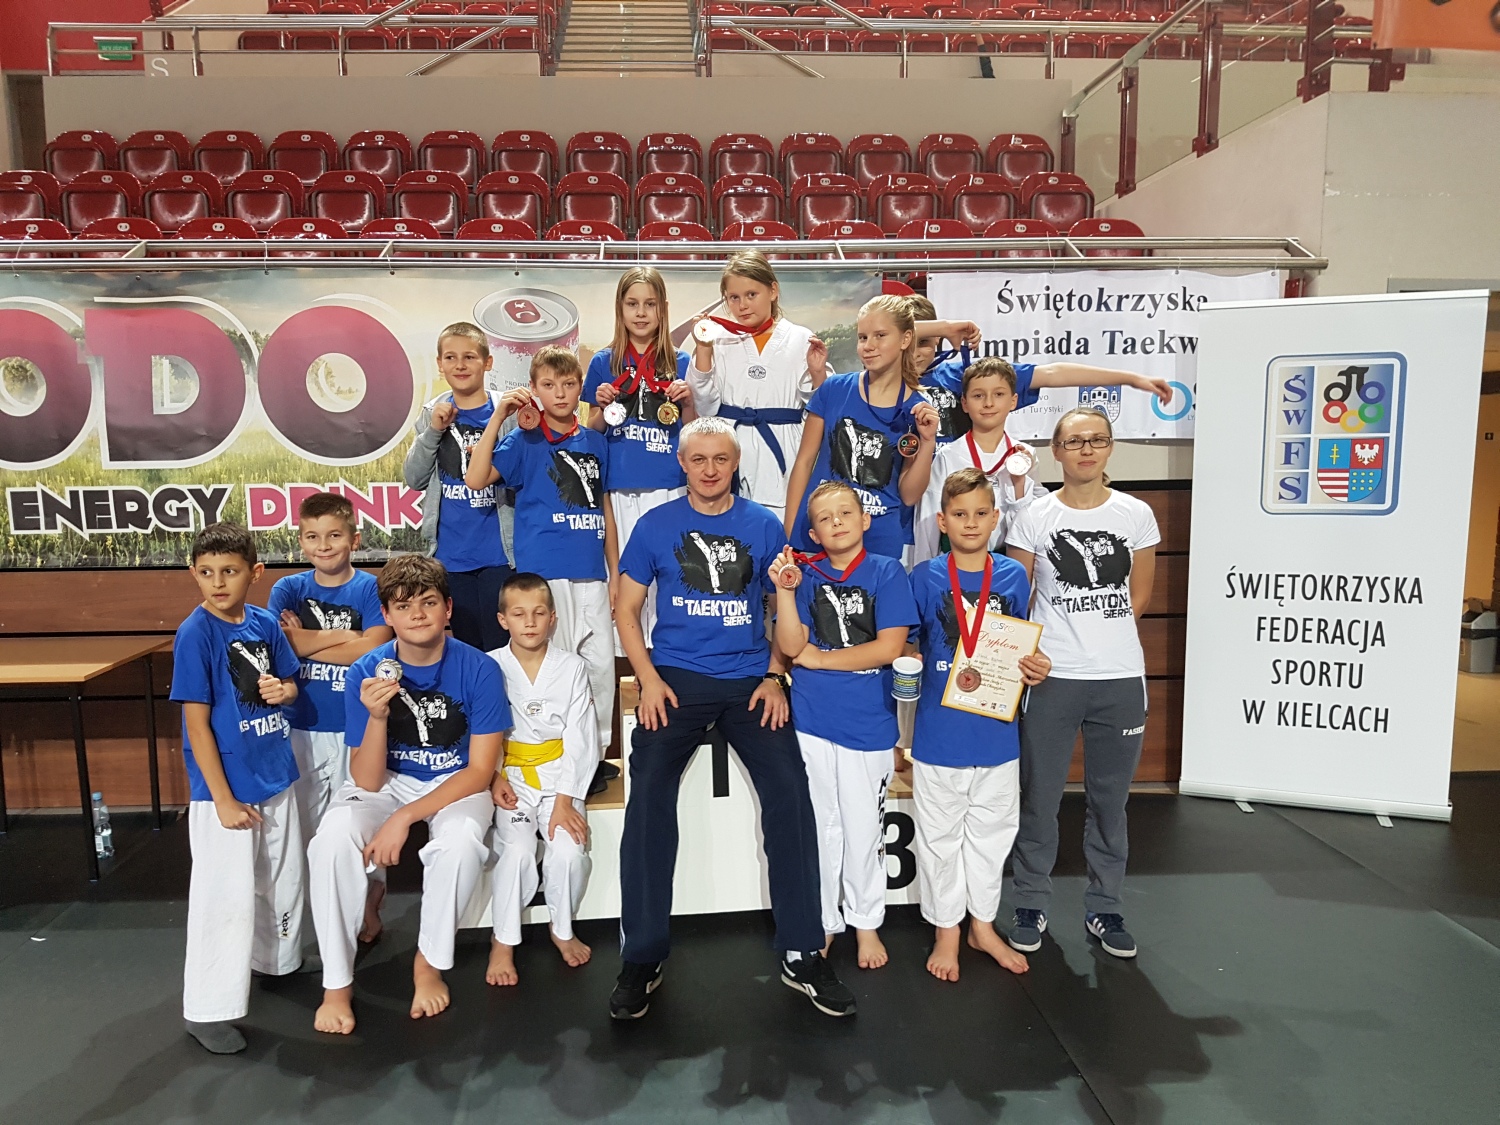 Midzywojewdzkie  Mistrzostwa Modzikw w Taekwondo Olimpijskim, 29.10.2016 r.